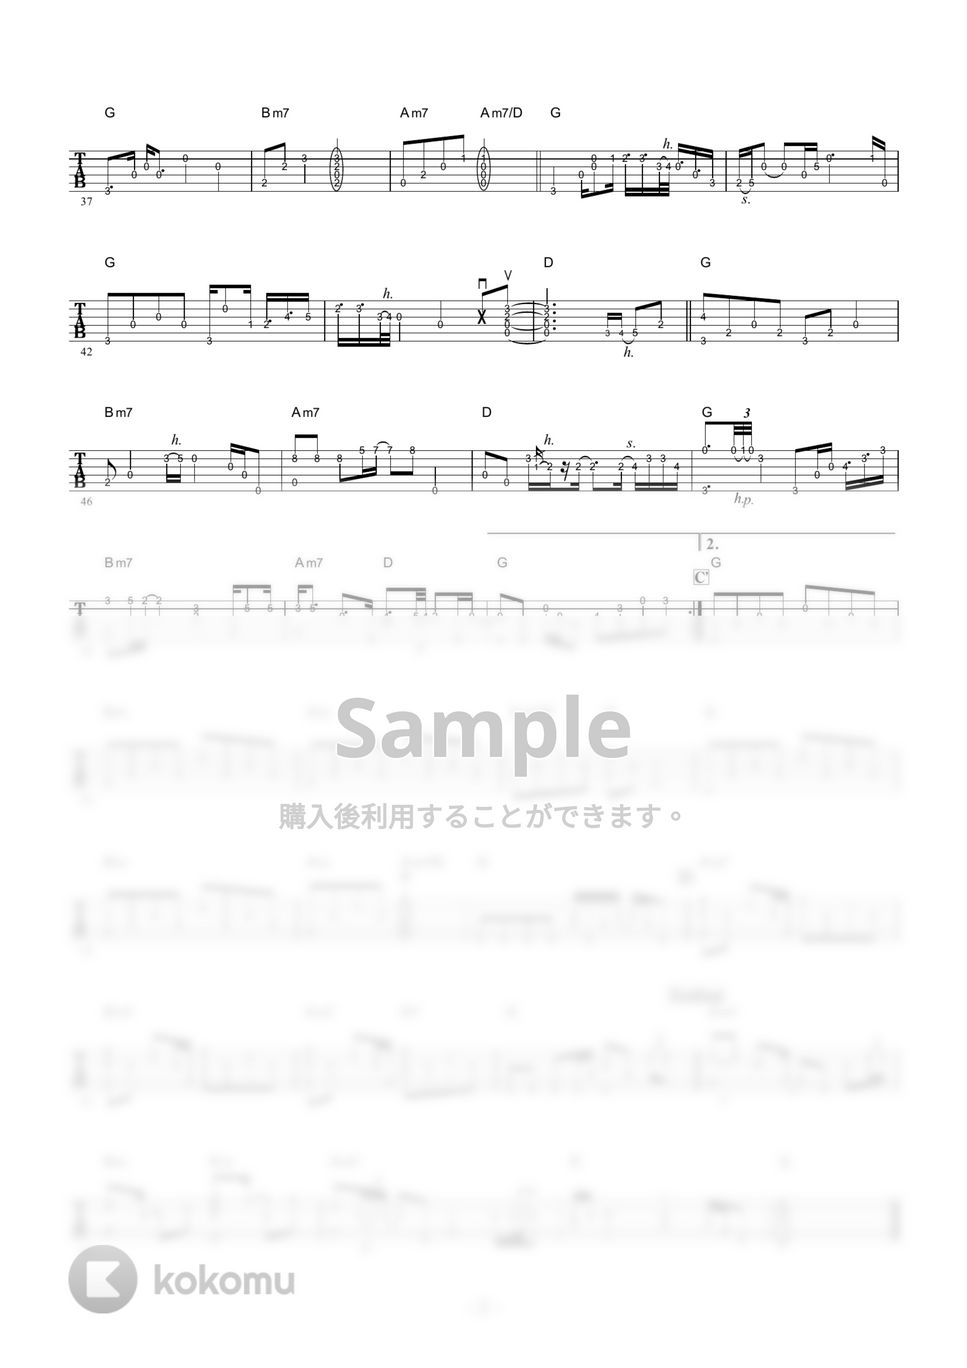 欧陽菲菲 - ラブ・イズ・オーヴァー (ギター伴奏/イントロ・間奏ソロギター) by 伴奏屋TAB譜